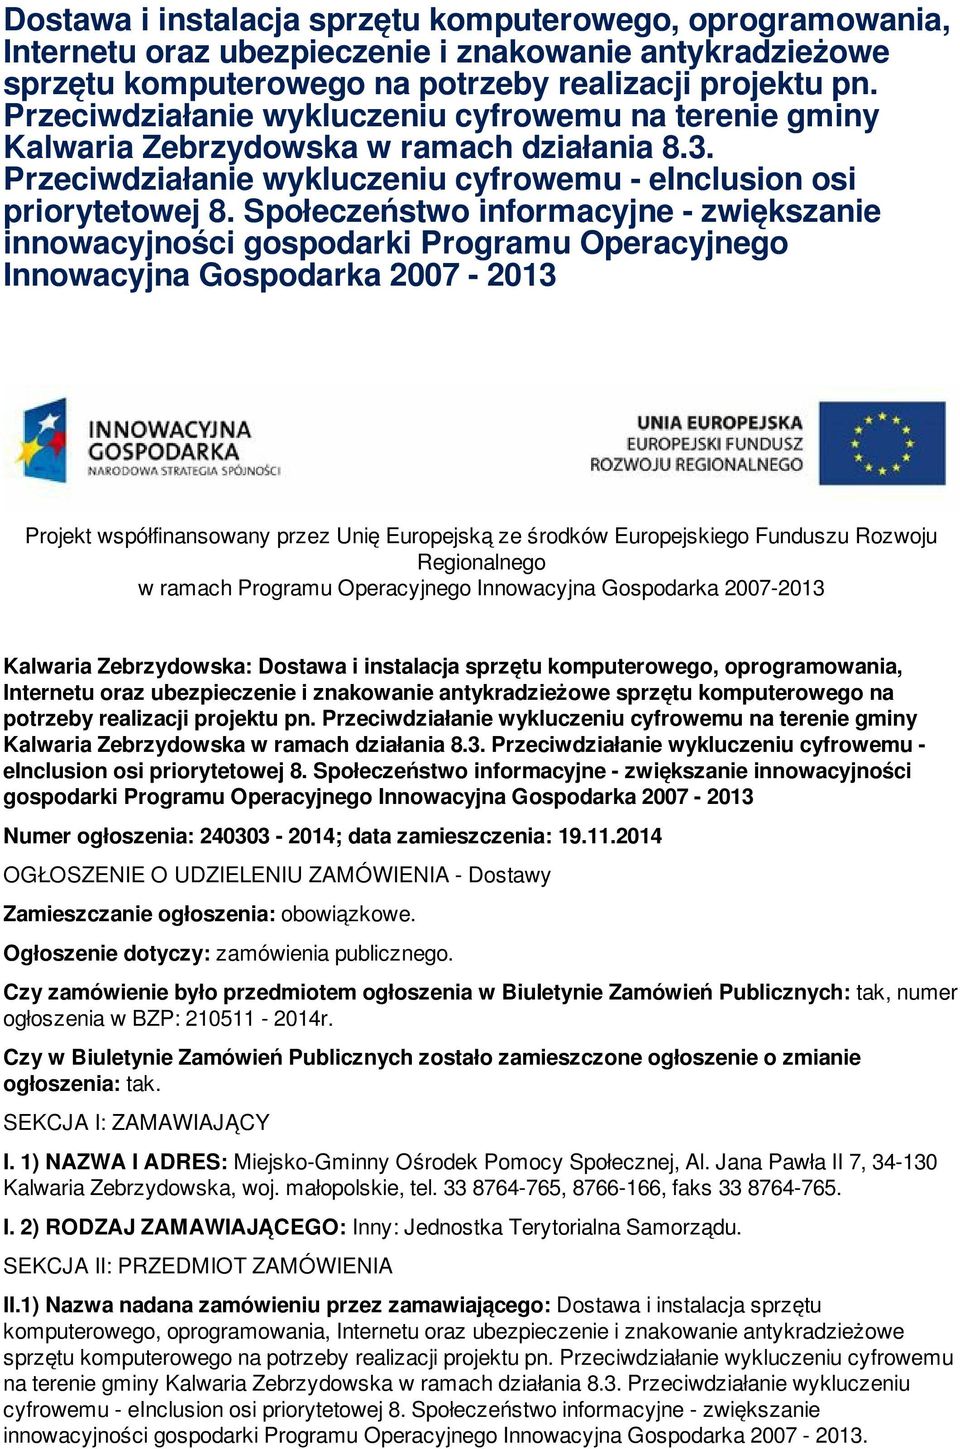 Społeczeństwo informacyjne - zwiększanie innowacyjności gospodarki Programu Operacyjnego Projekt współfinansowany przez Unię Europejską ze środków Europejskiego Funduszu Rozwoju Regionalnego w ramach